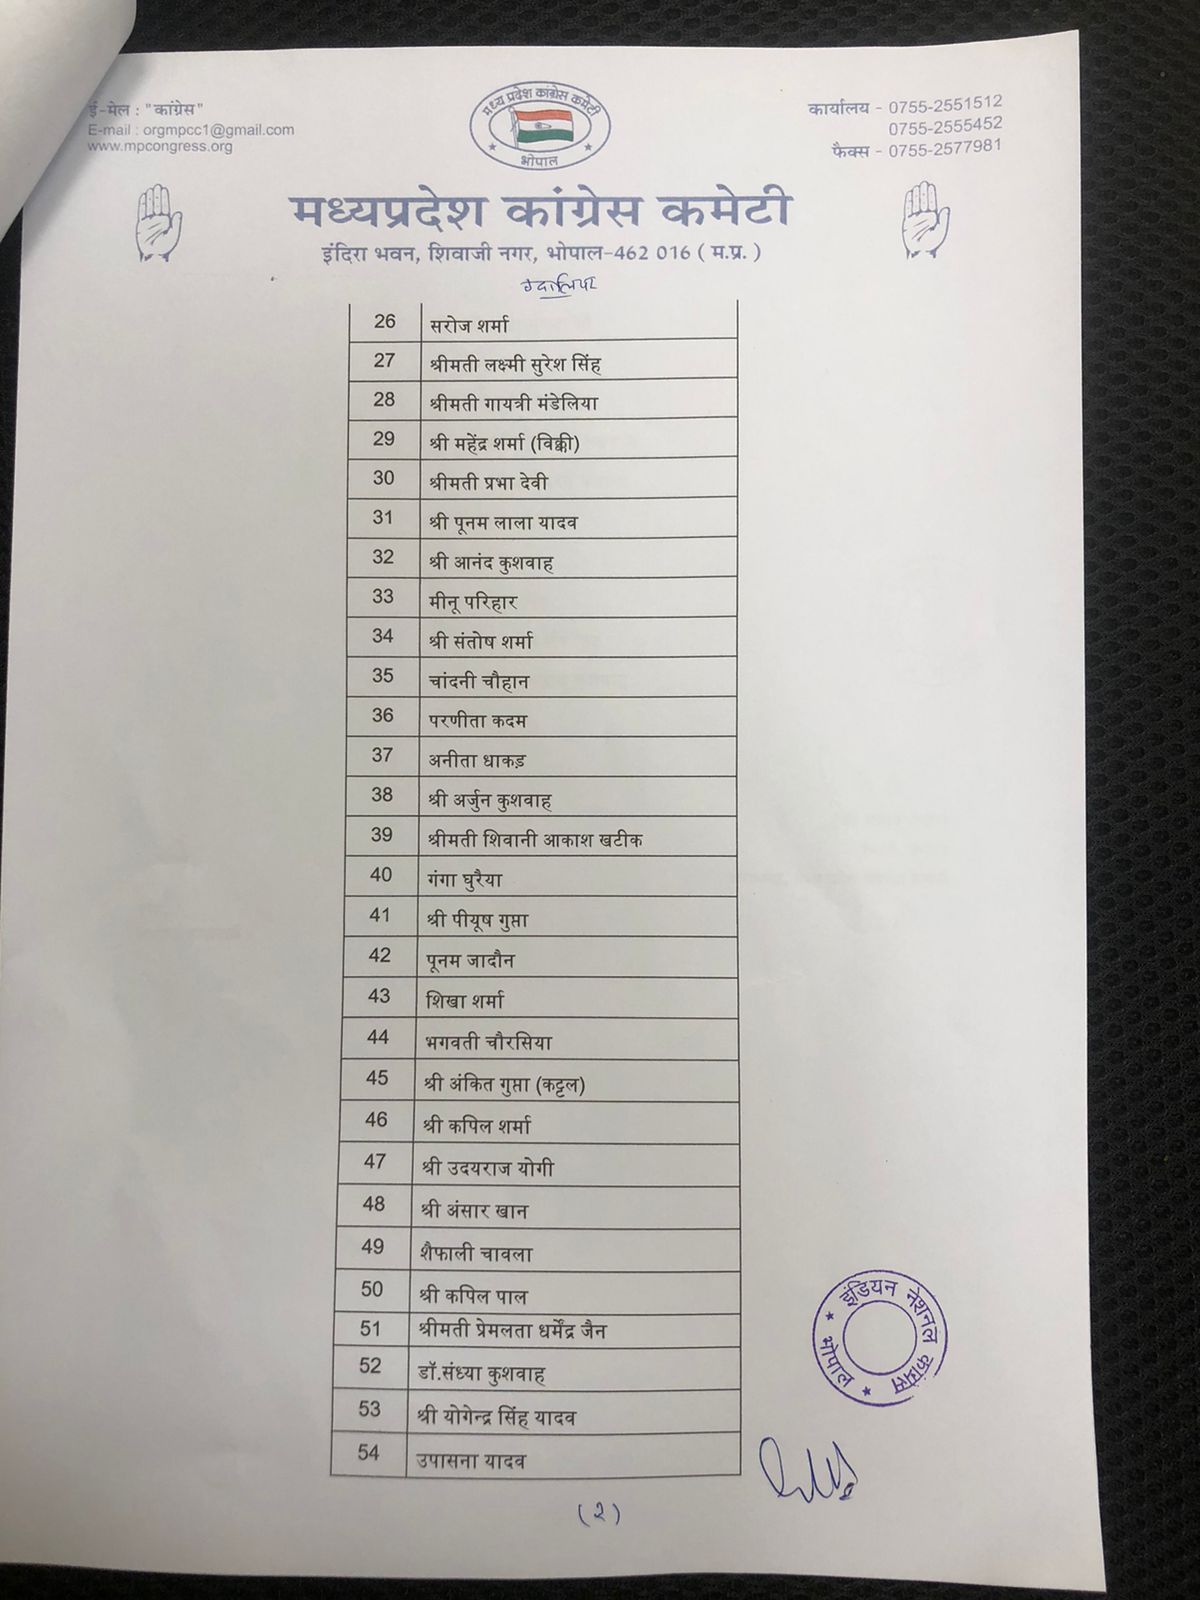 MP Urban Body Elections : कांग्रेस ने जारी की Gwalior के पार्षद प्रत्याशियों की सूची